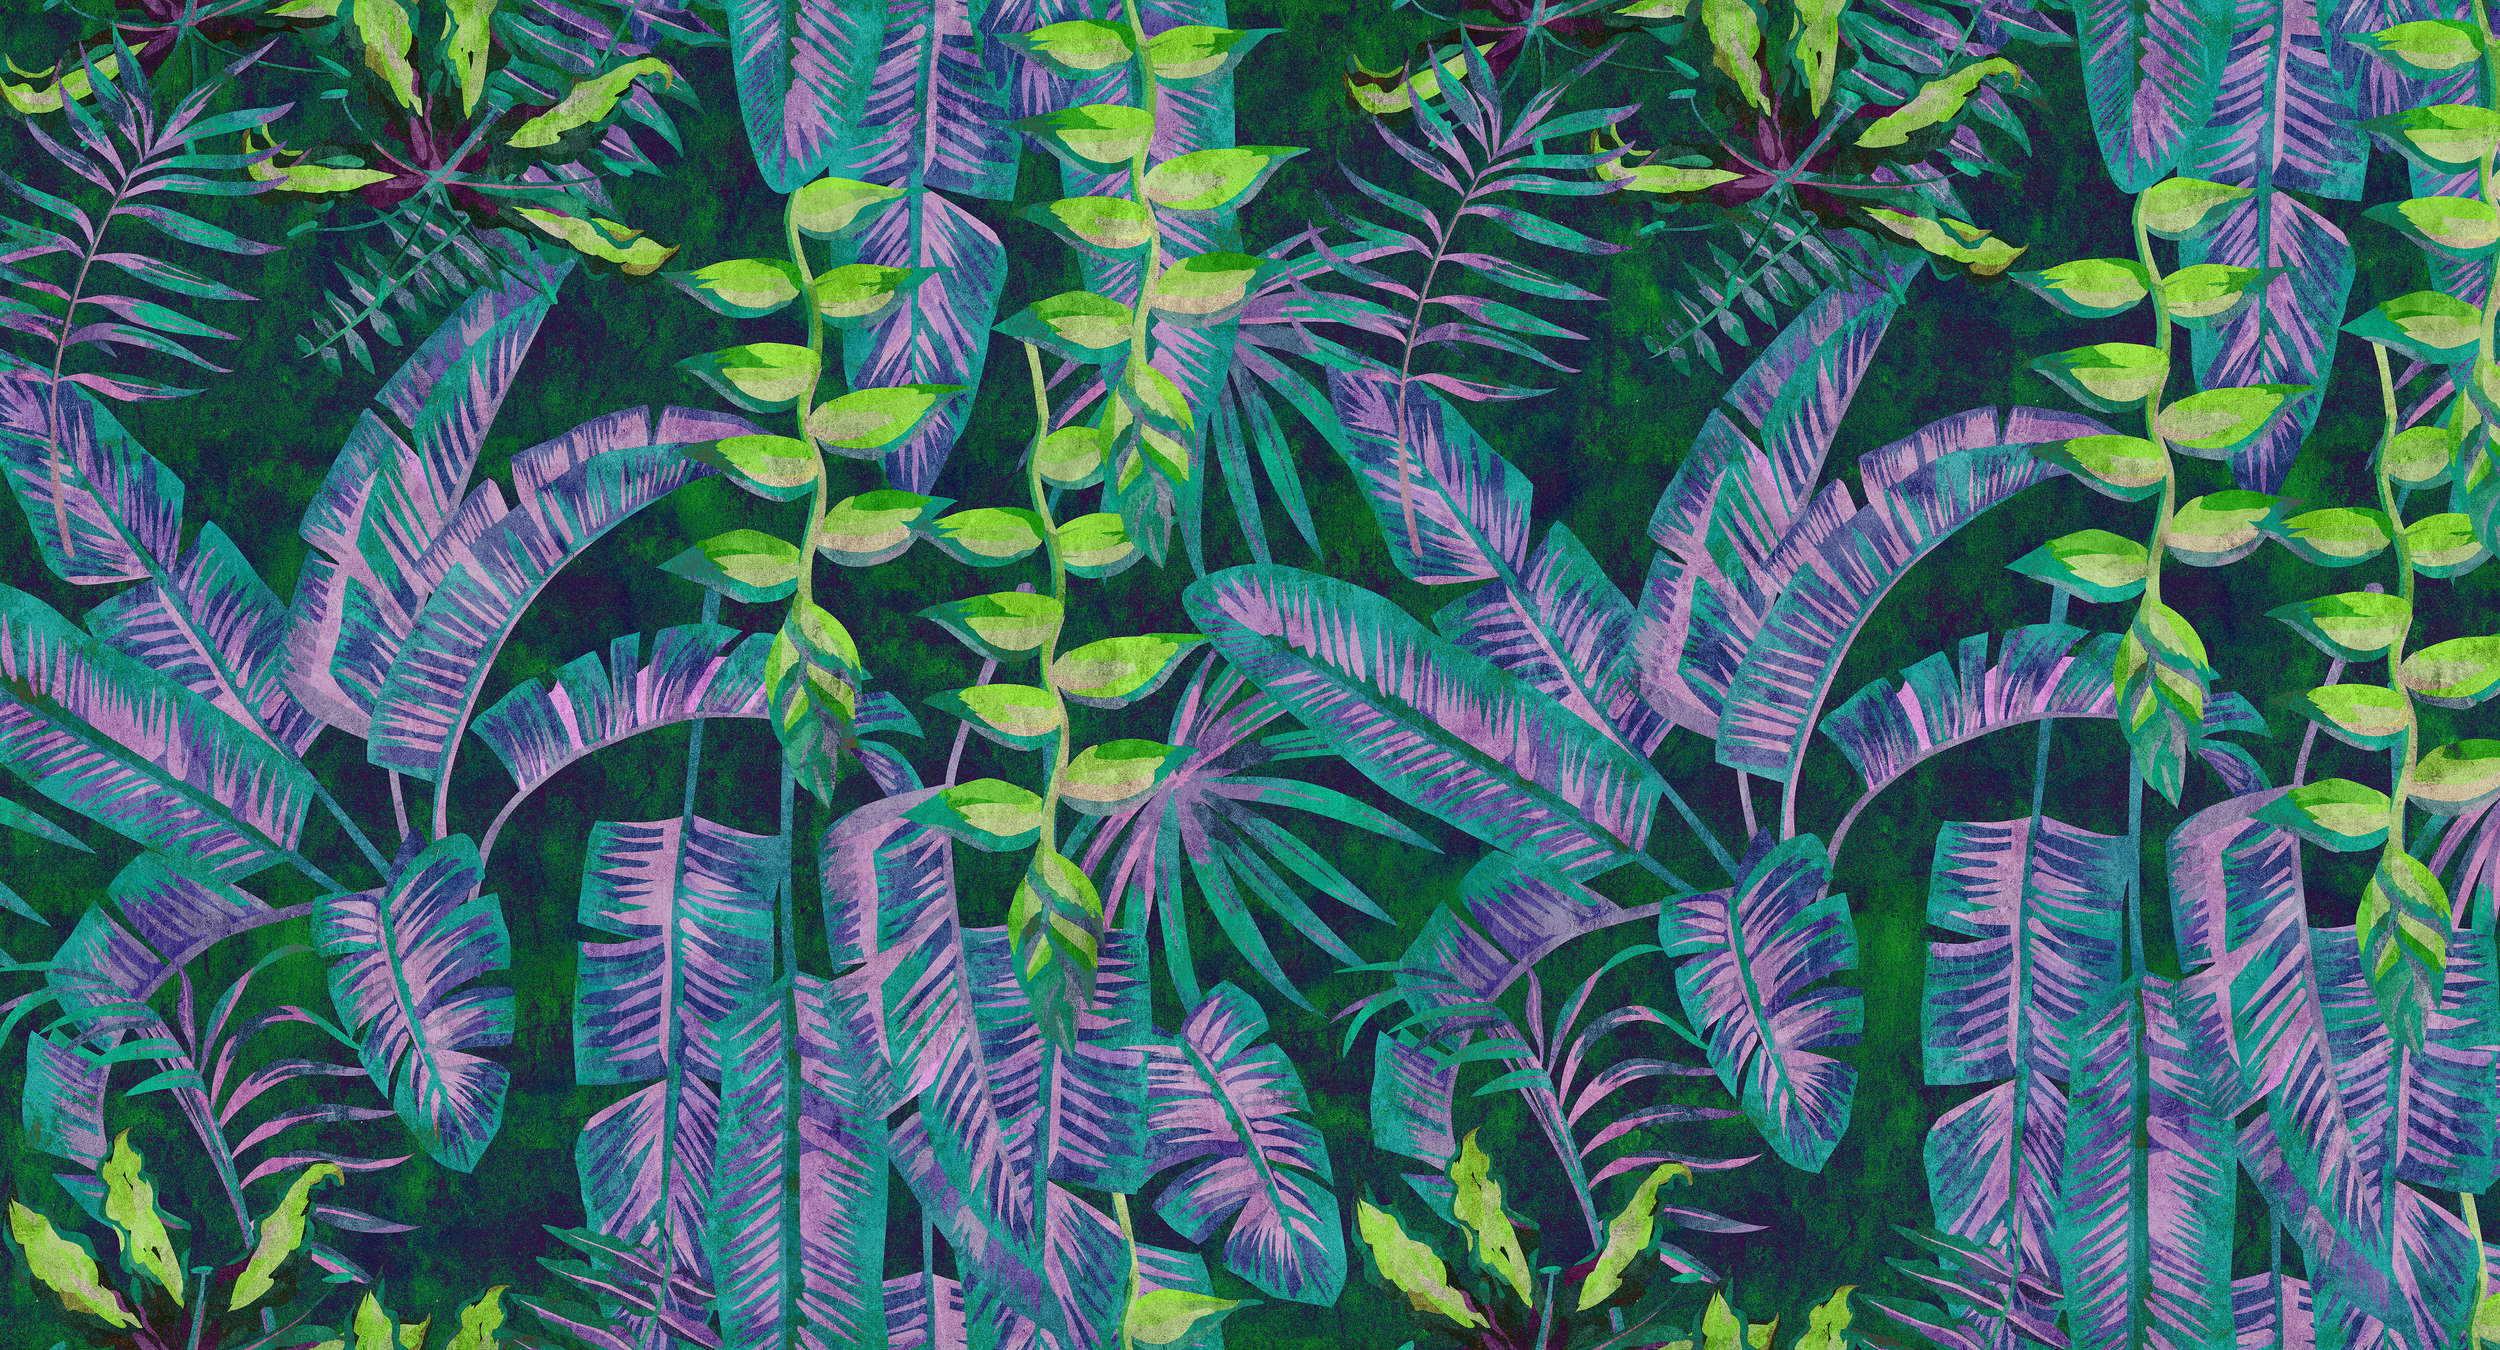             Tropicana 5 - Jungle behang met neonkleuren in vloeipapierstructuur - Blauw, Groen | Mat glad vlies
        